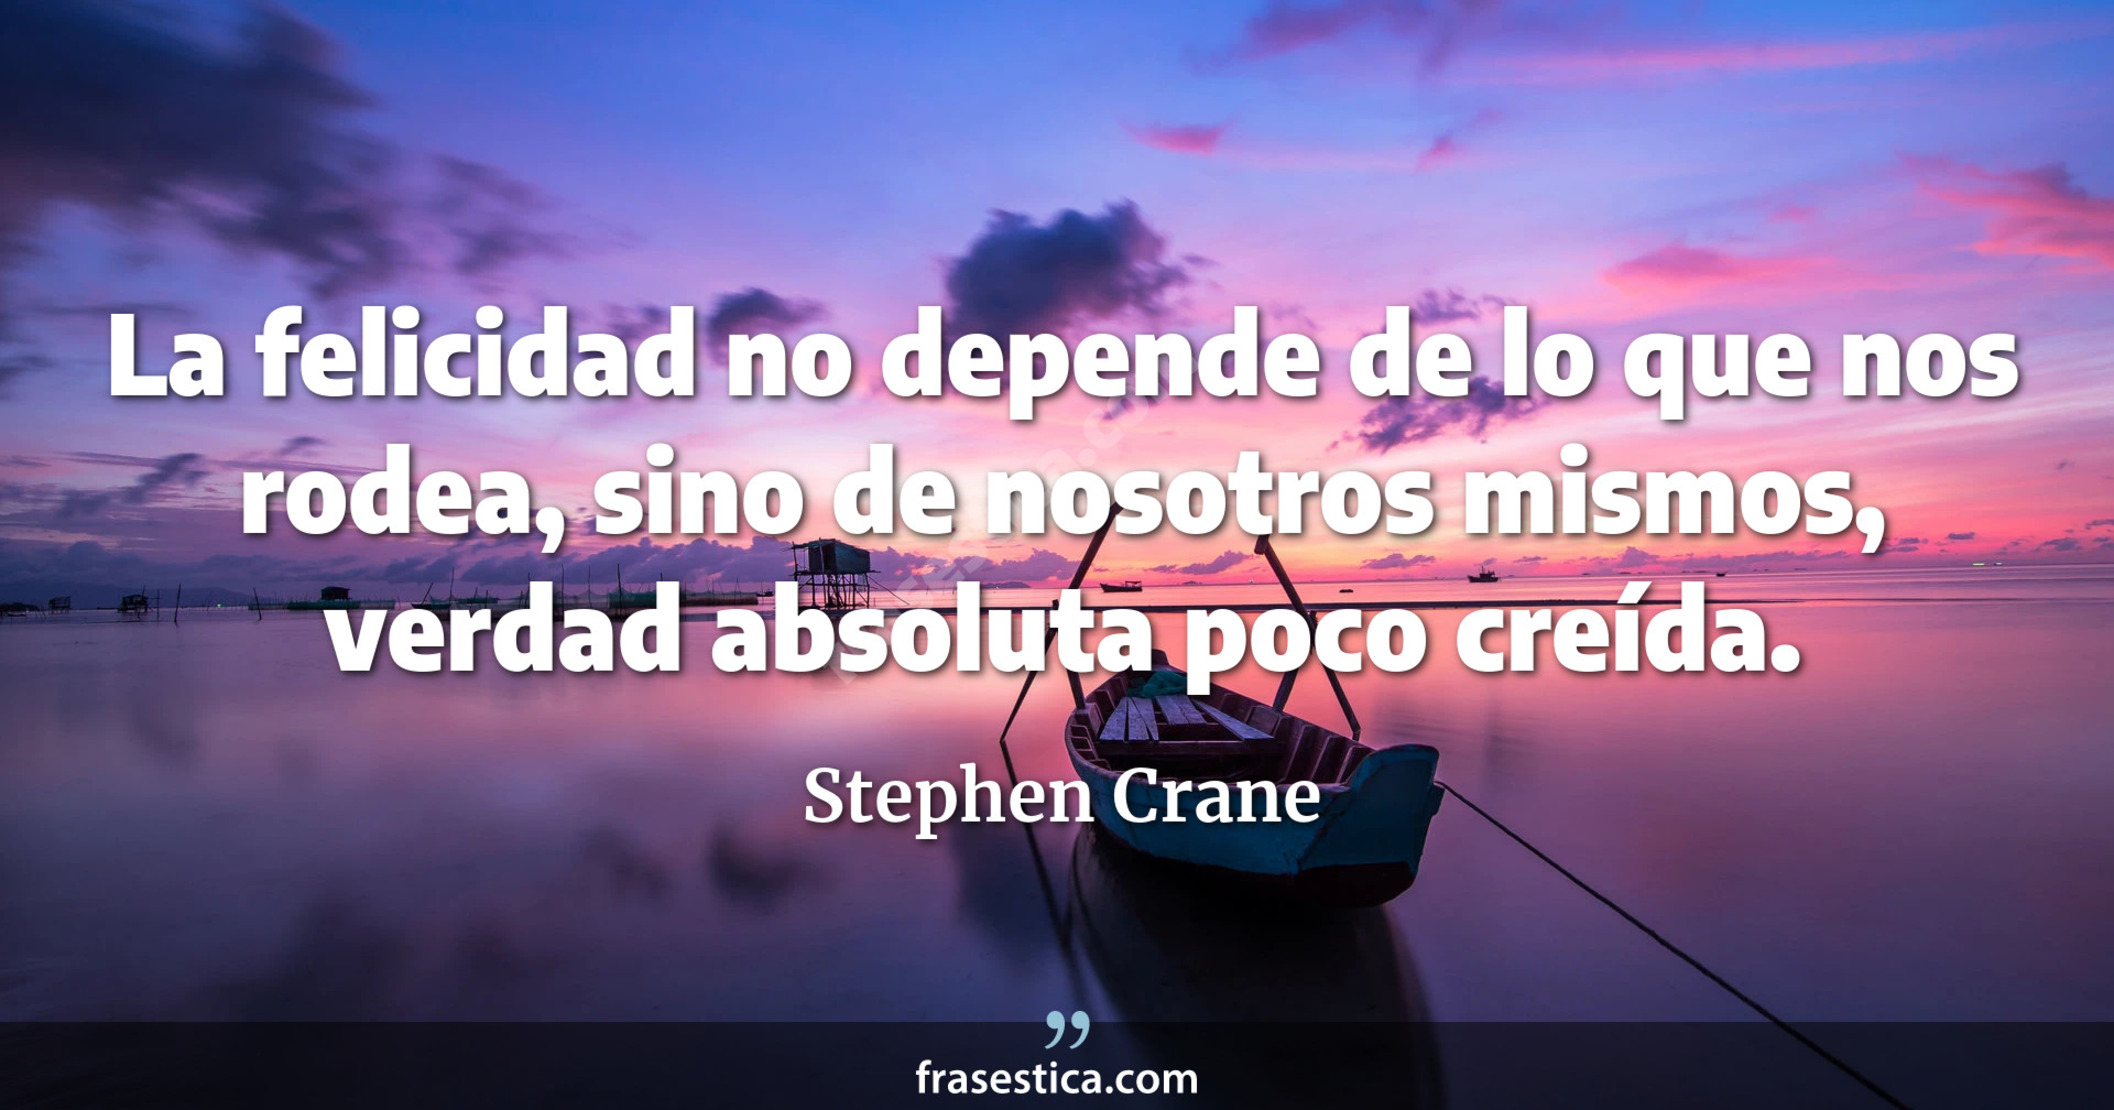 La felicidad no depende de lo que nos rodea, sino de nosotros mismos, verdad absoluta poco creída. - Stephen Crane